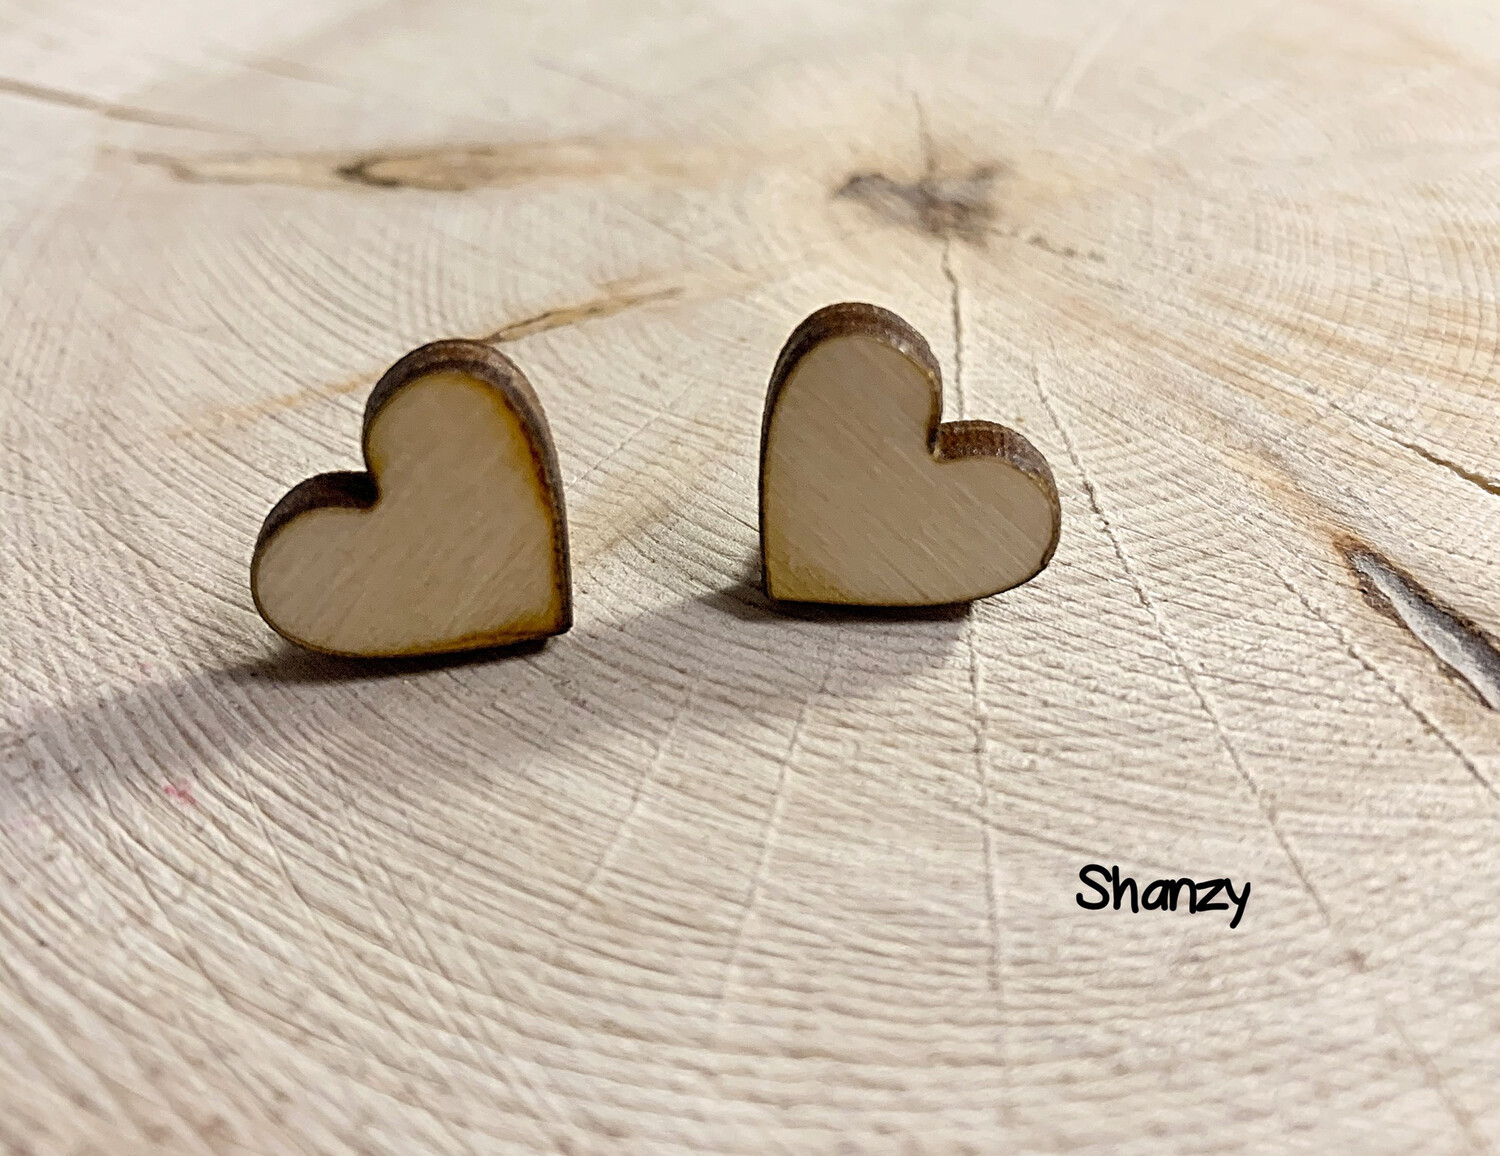 Heart Wood Earrings